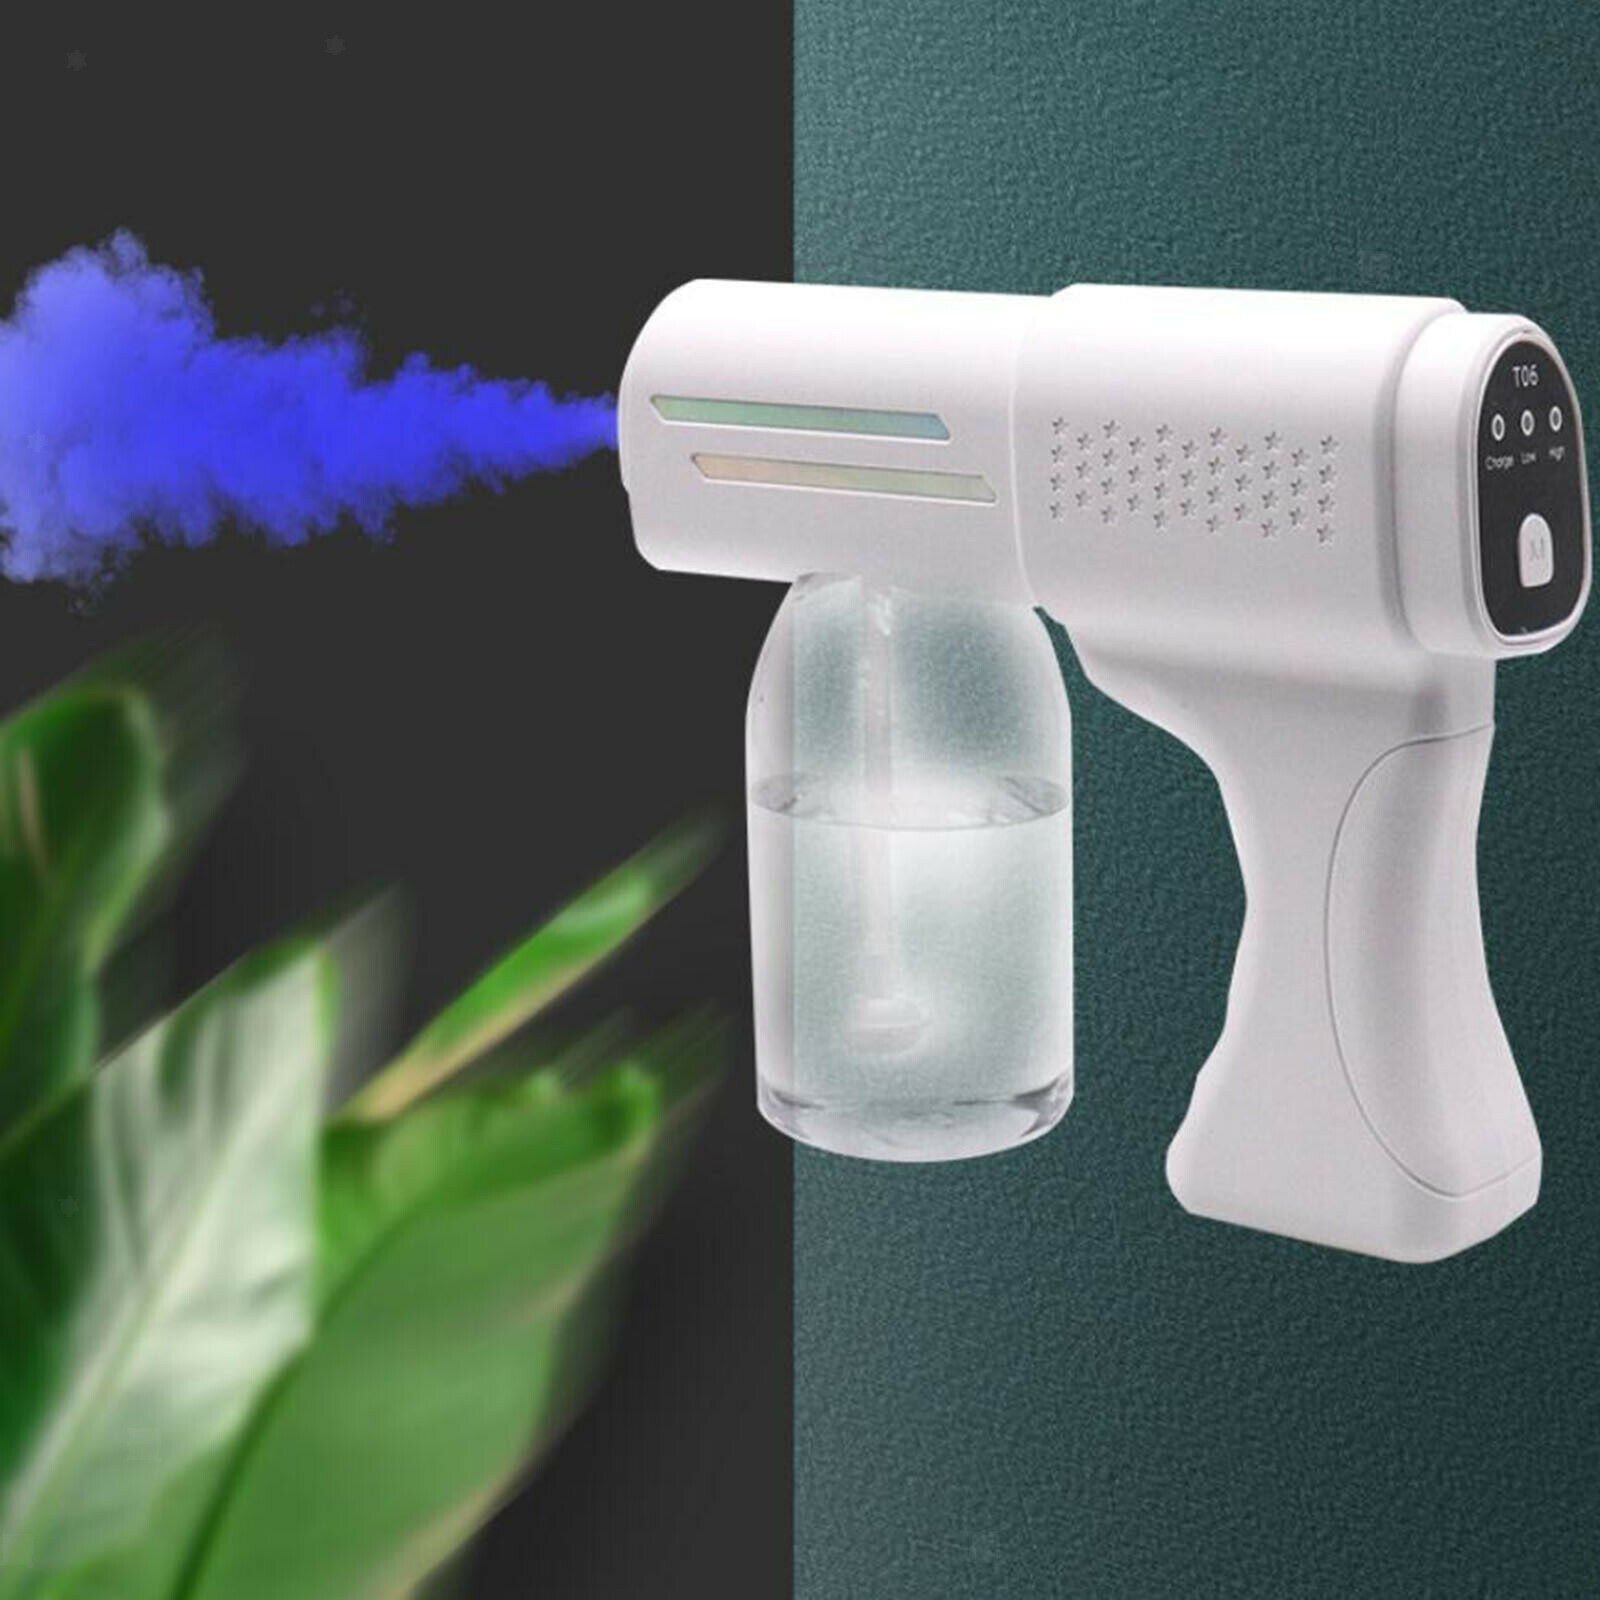 Handheld Nano Sprayer Steam Gun Cordless Rechargeable Fogger for Home Office